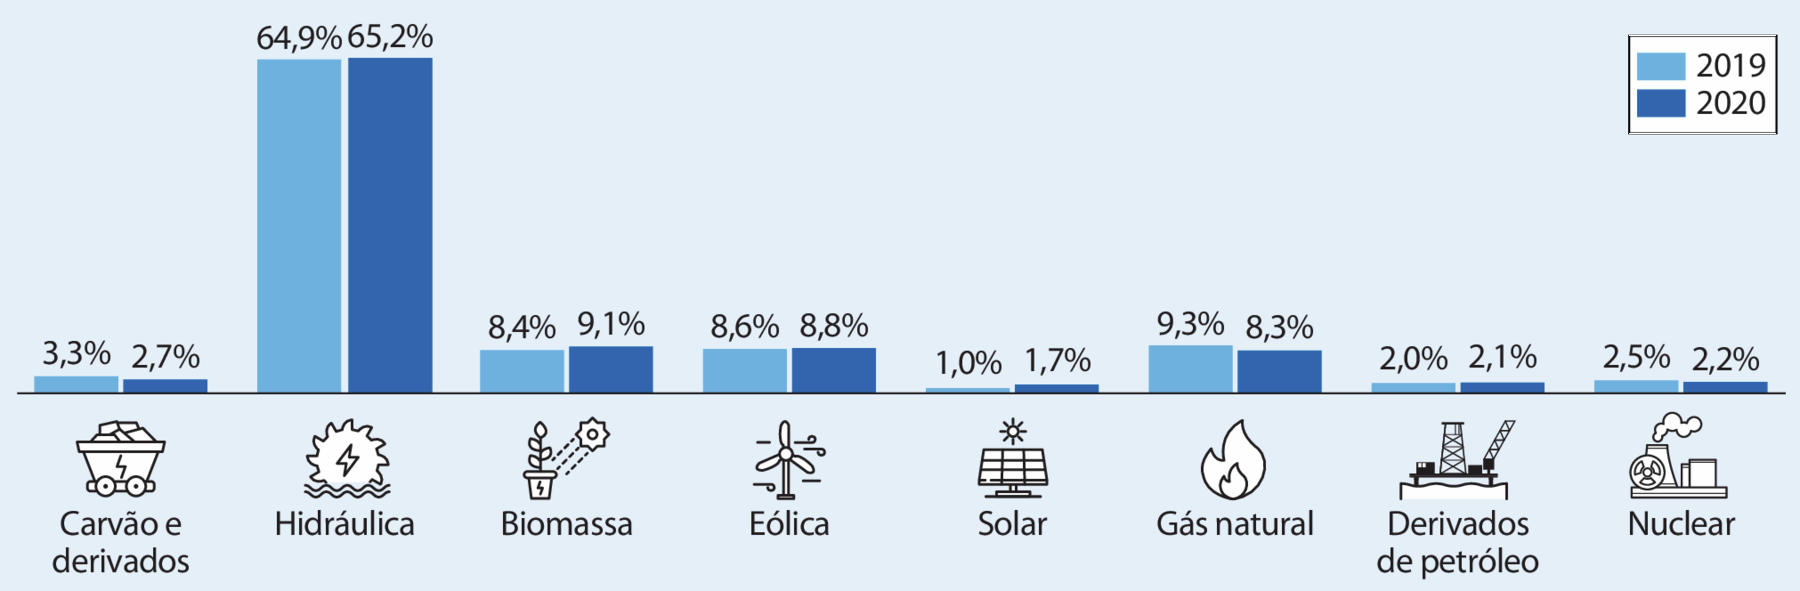 Gráfico de colunas. No eixo vertical: valores em porcentagem. No eixo horizontal, fontes de energia elétrica. Cada fonte apresenta dois valores, um referente ao ano de 2019, e outro, ao de 2020. Carvão e derivados (ilustração de um carrinho com pedras dentro): 3,3% e 2,7%. Hidráulica (ilustração de uma engrenagem com água na parte inferior): 64,9% e 65,2%. Biomassa (ilustração de um vaso com planta e na parte superior, o sol com raios sobre a planta): 8,4% e 9,1%. Eólica (ilustração de um moinho de vento): 8,6% e 8,8%. Solar (ilustração de placas solares com o sol acima): 1,0% e 1,7%. Gás natural (ilustração de uma chama de fogo): 9,3% e 8,3%. Derivados de petróleo (ilustração de um porto com torre e outros aparelhos): 2,0% e 2,1%. Nuclear (ilustração de uma usina com torres, sendo que de uma delas sai fumaça e um círculo): 2,5% e 2,2%.